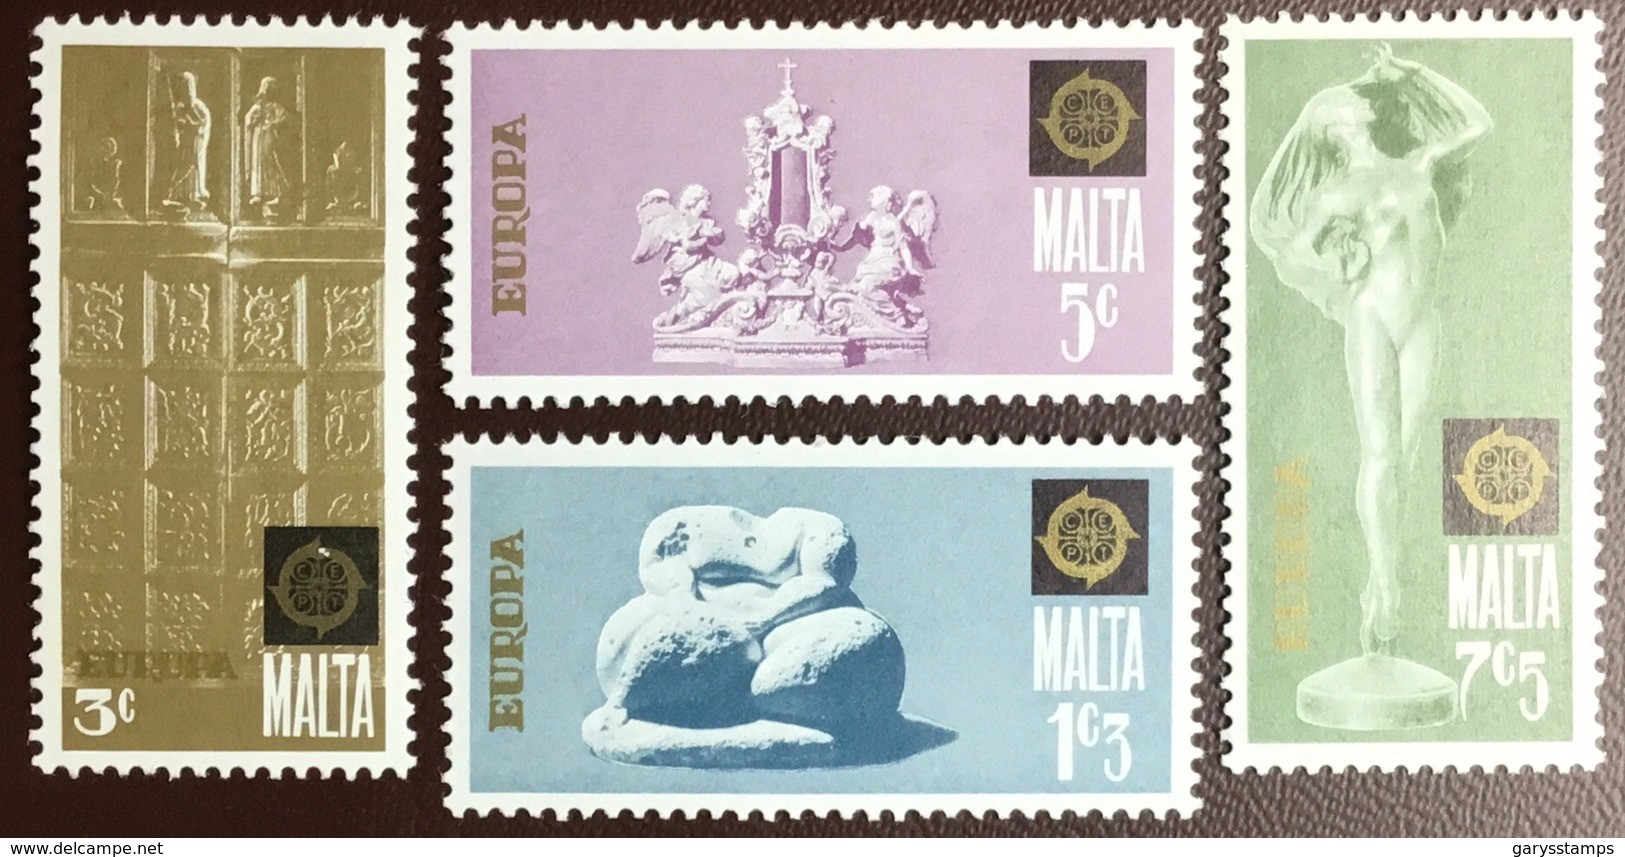 Malta 1974 Europa MNH - Malta